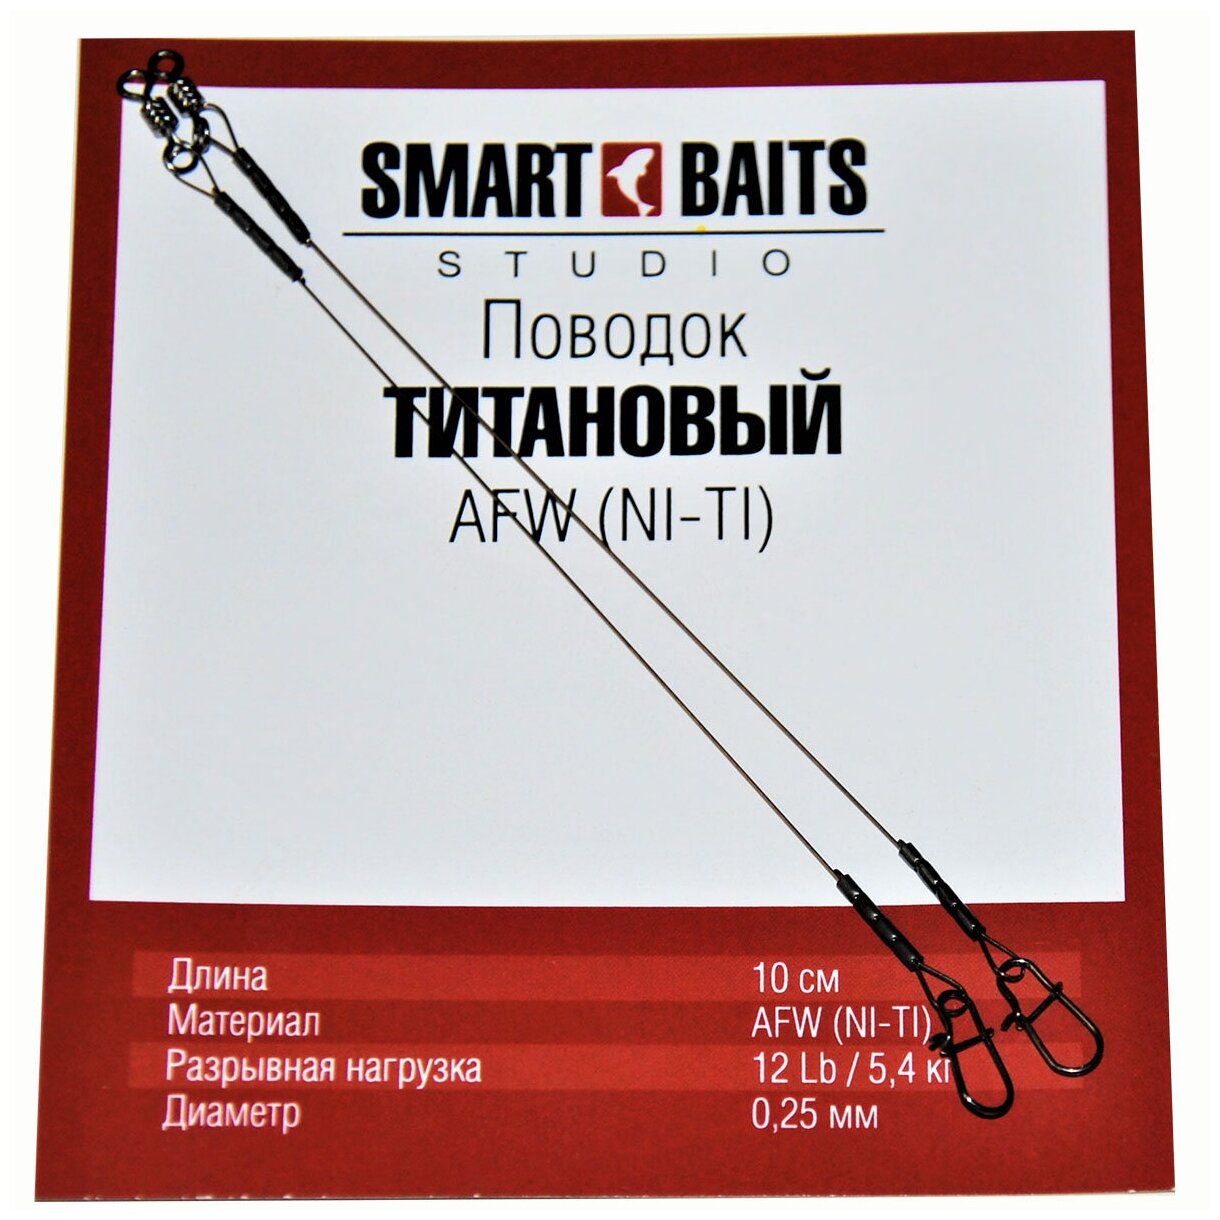 Поводок Титановый AFW NI-TI 2/уп Smart Baits Studio